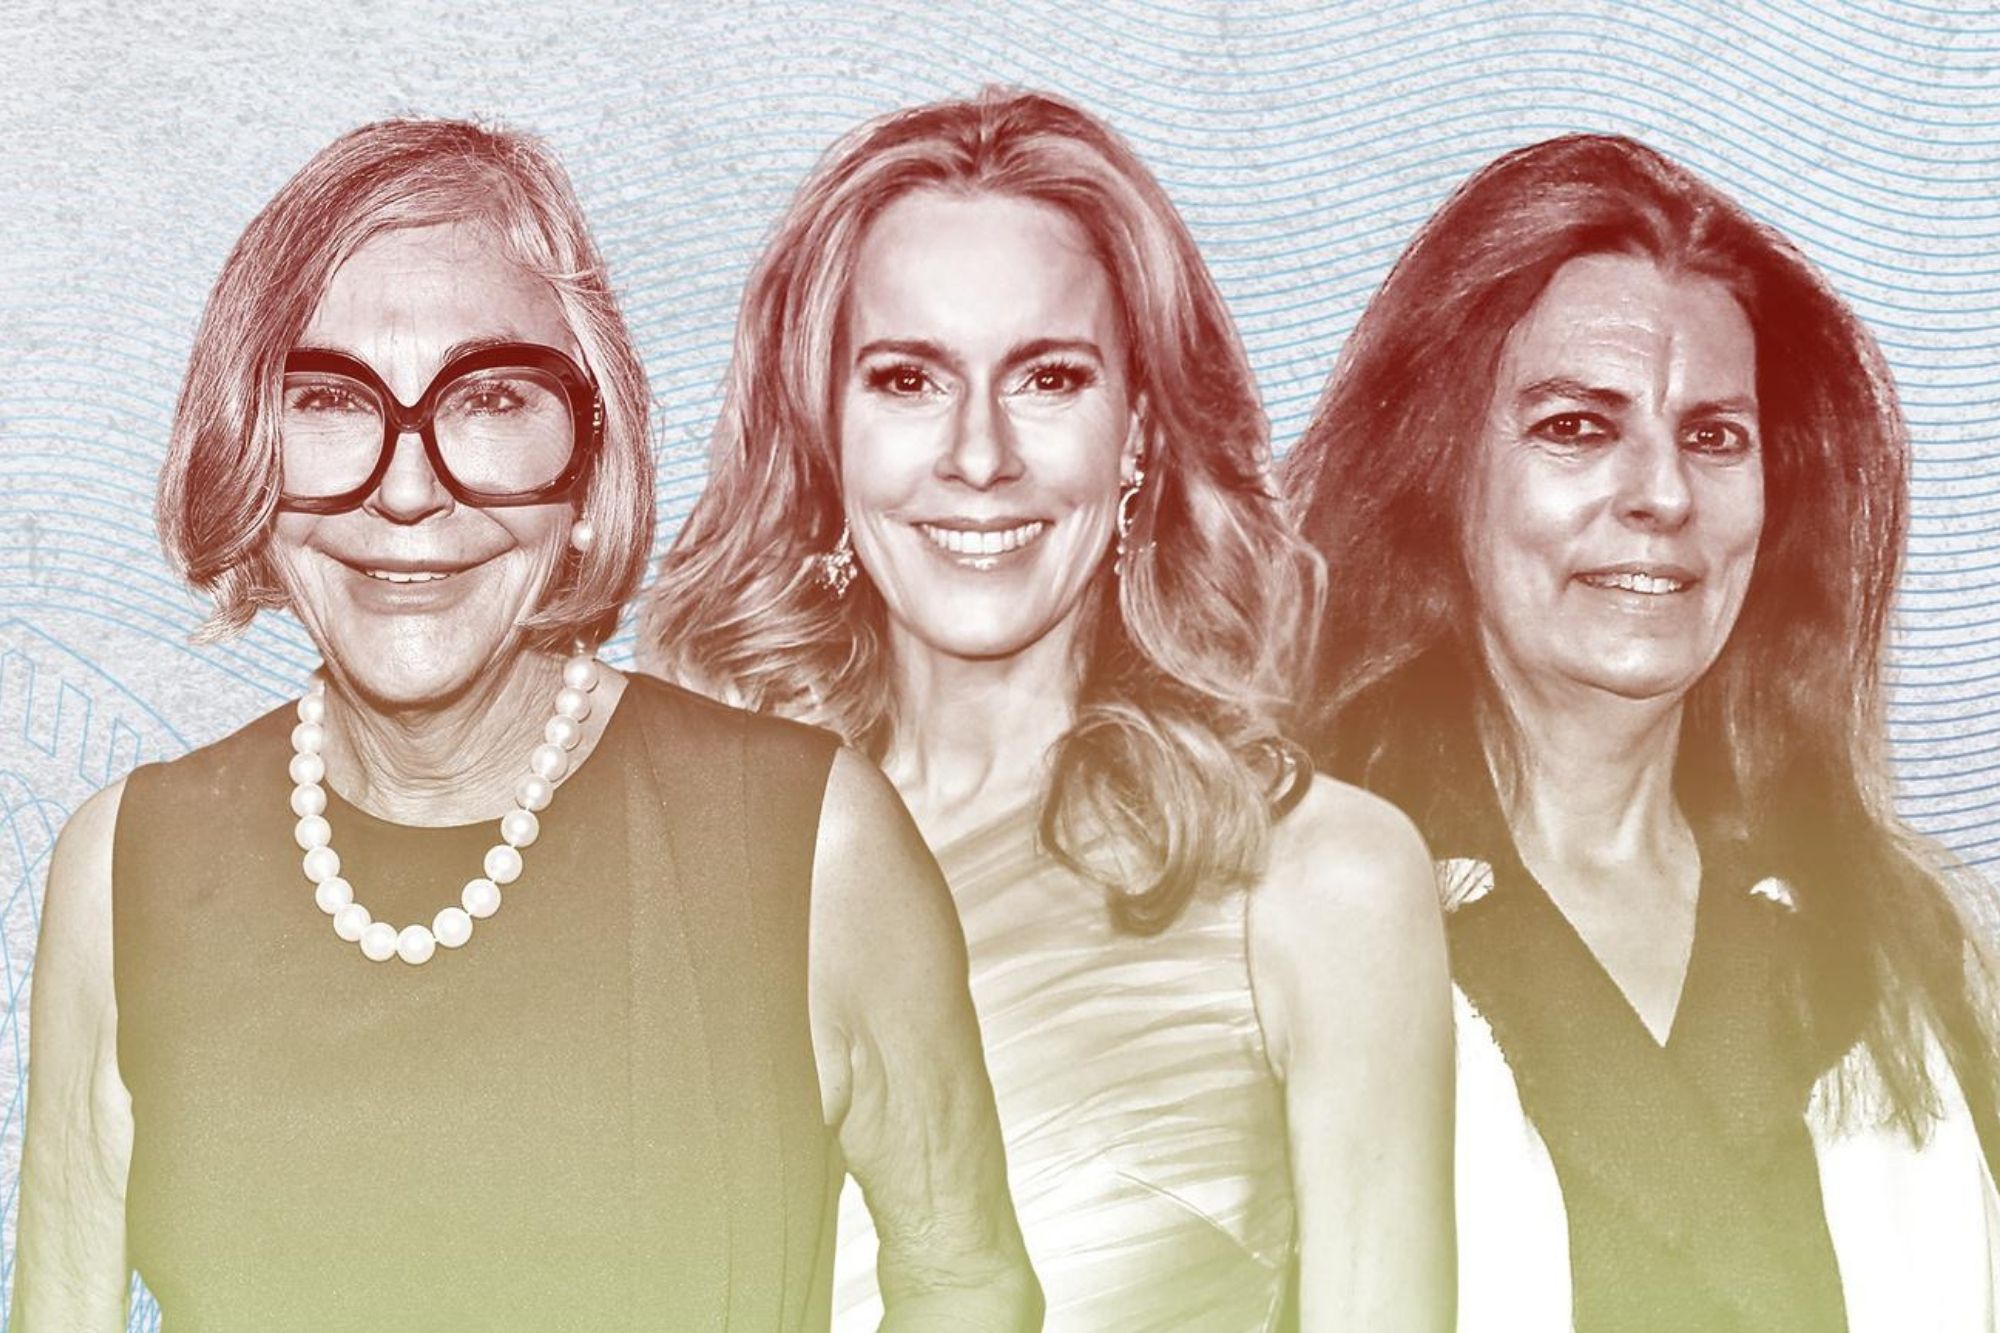 Alice Walton, Julia Koch e Françoise Bettencourt Meyers são alguns dos nomes da lista que inclui 328 mulheres bilionárias (Foto: Forbes)